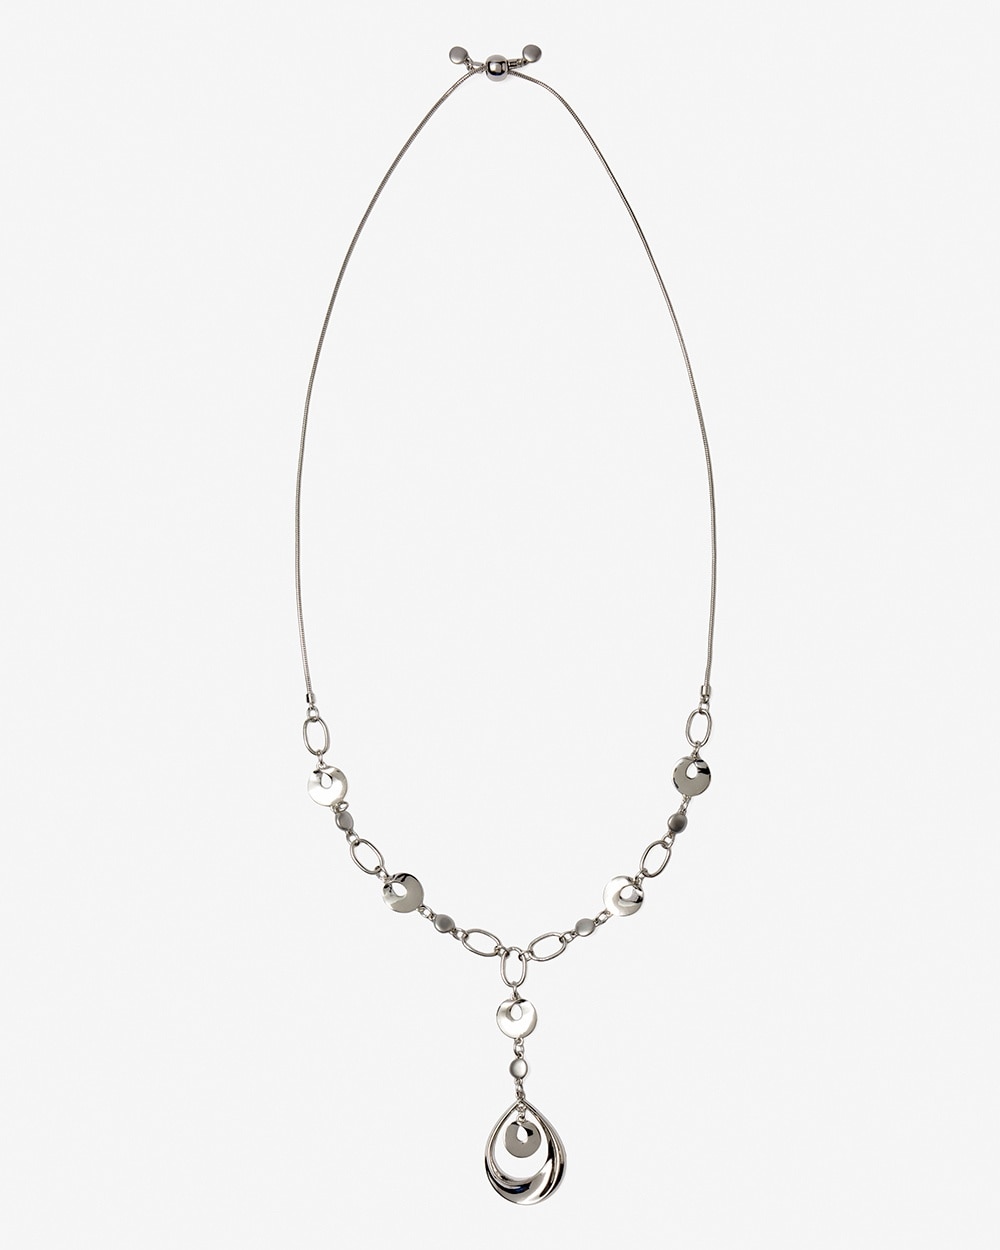 Silvertone Adjustable Necklace